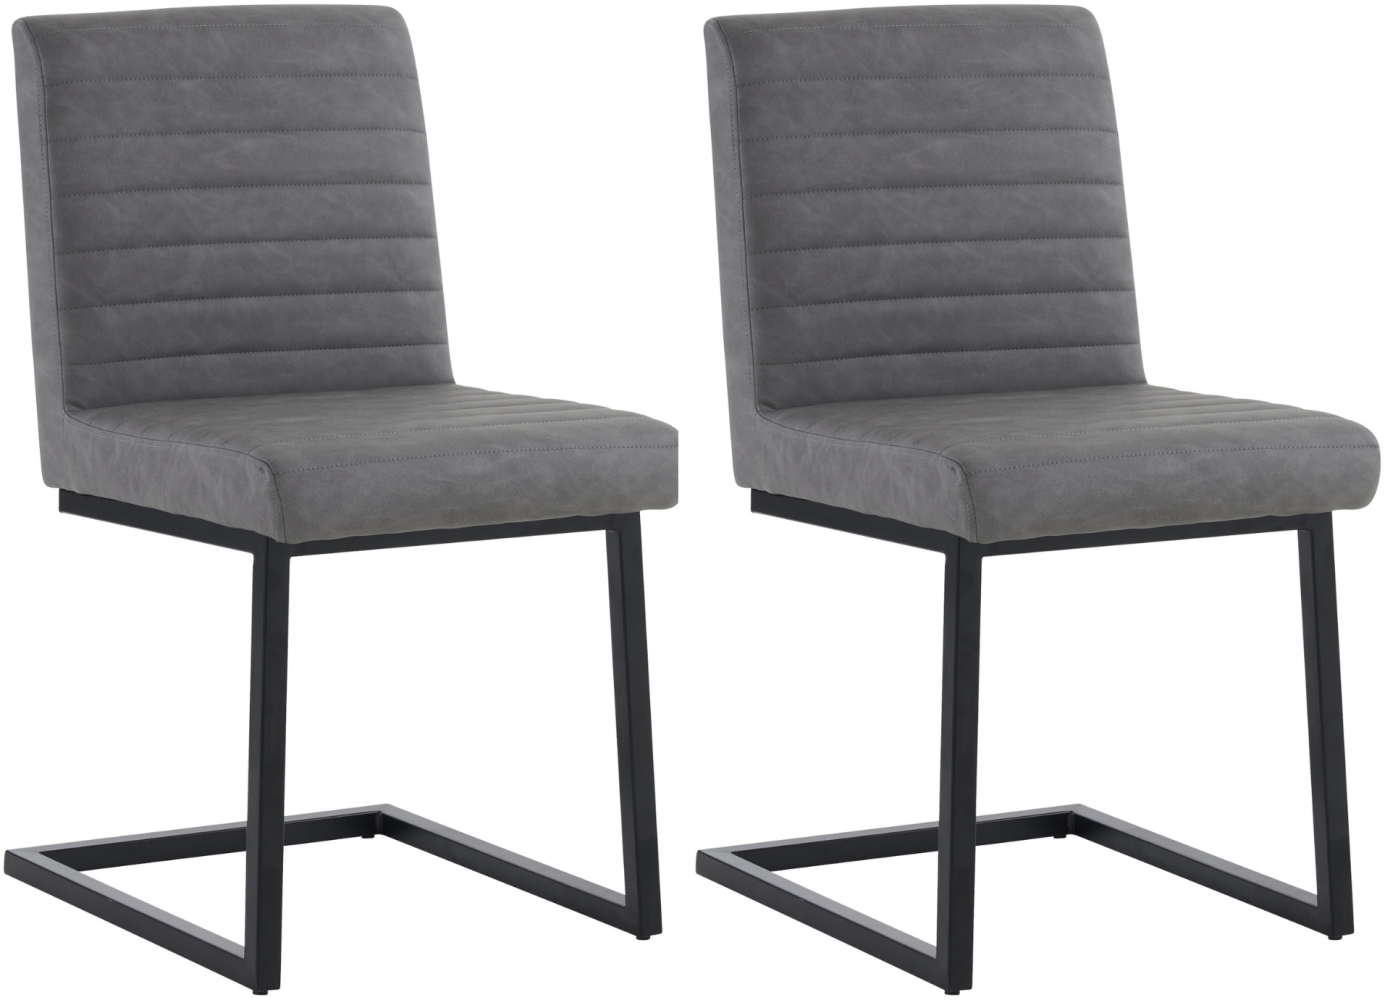 Merax 2er Set Esszimmerstühle, Gepolsterter Stuhl mit zickzackförmige Metallbeine, Moderner Lounge-Stuhl, Kunstleder, grau Bild 1